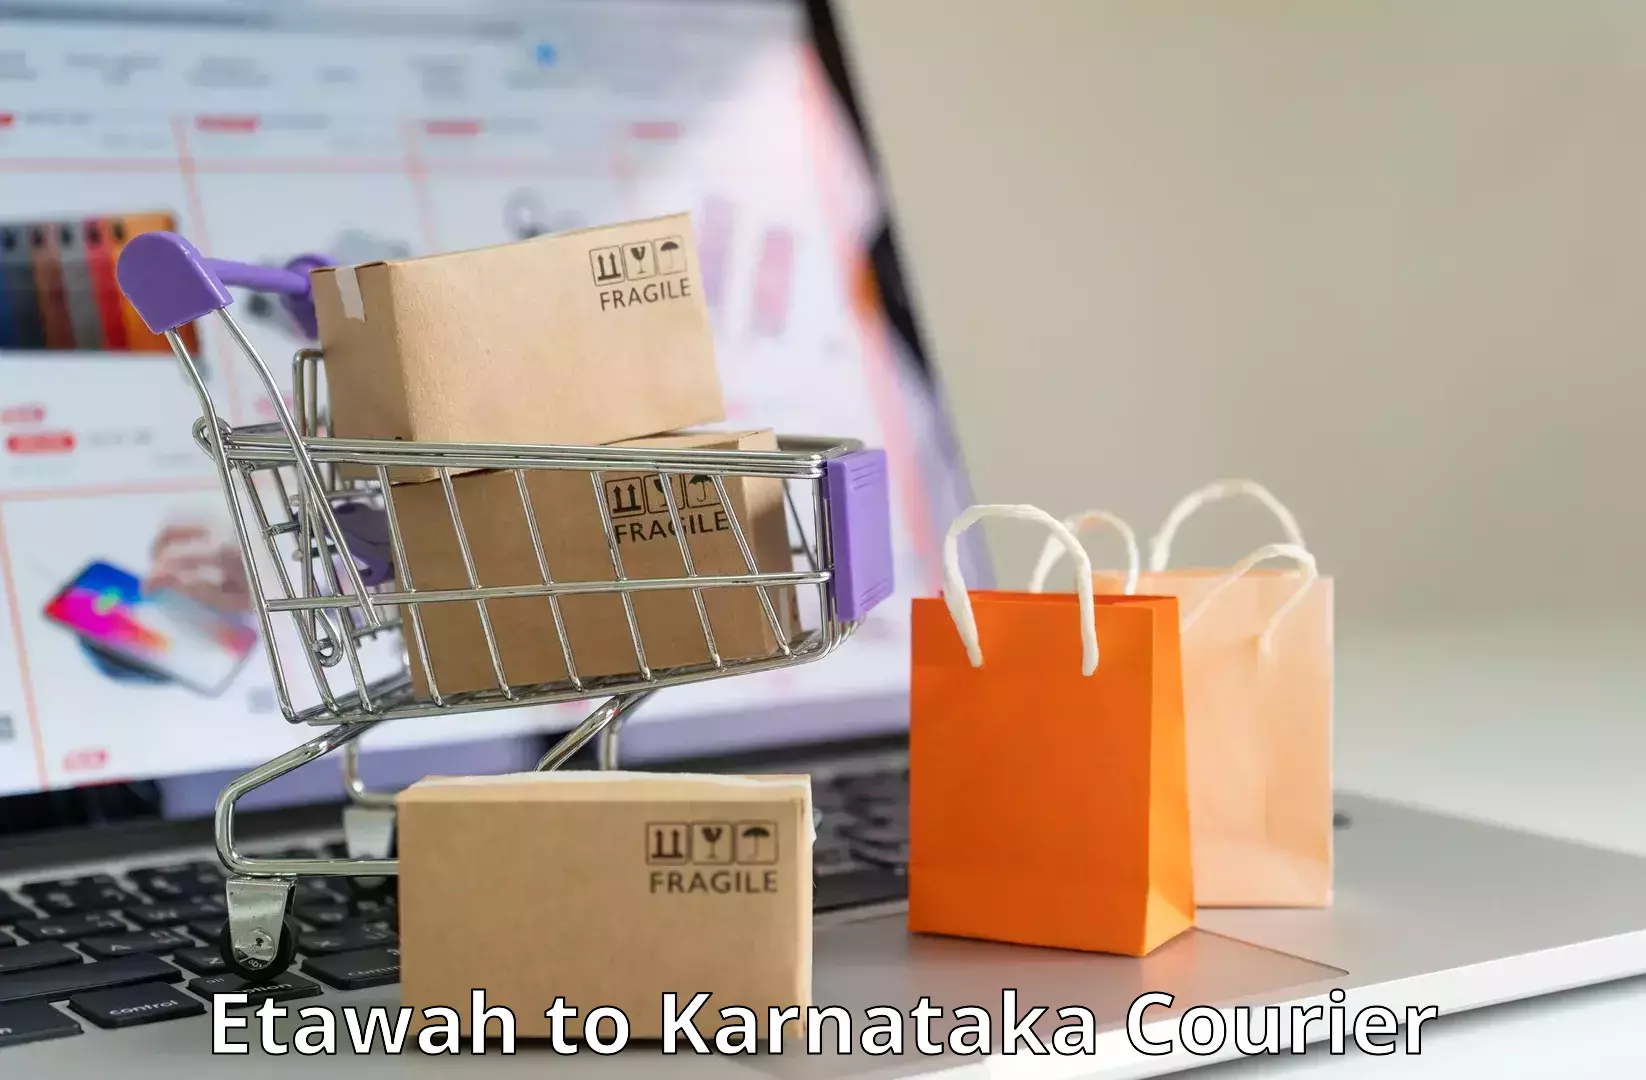 Efficient parcel delivery Etawah to Mangalore Port